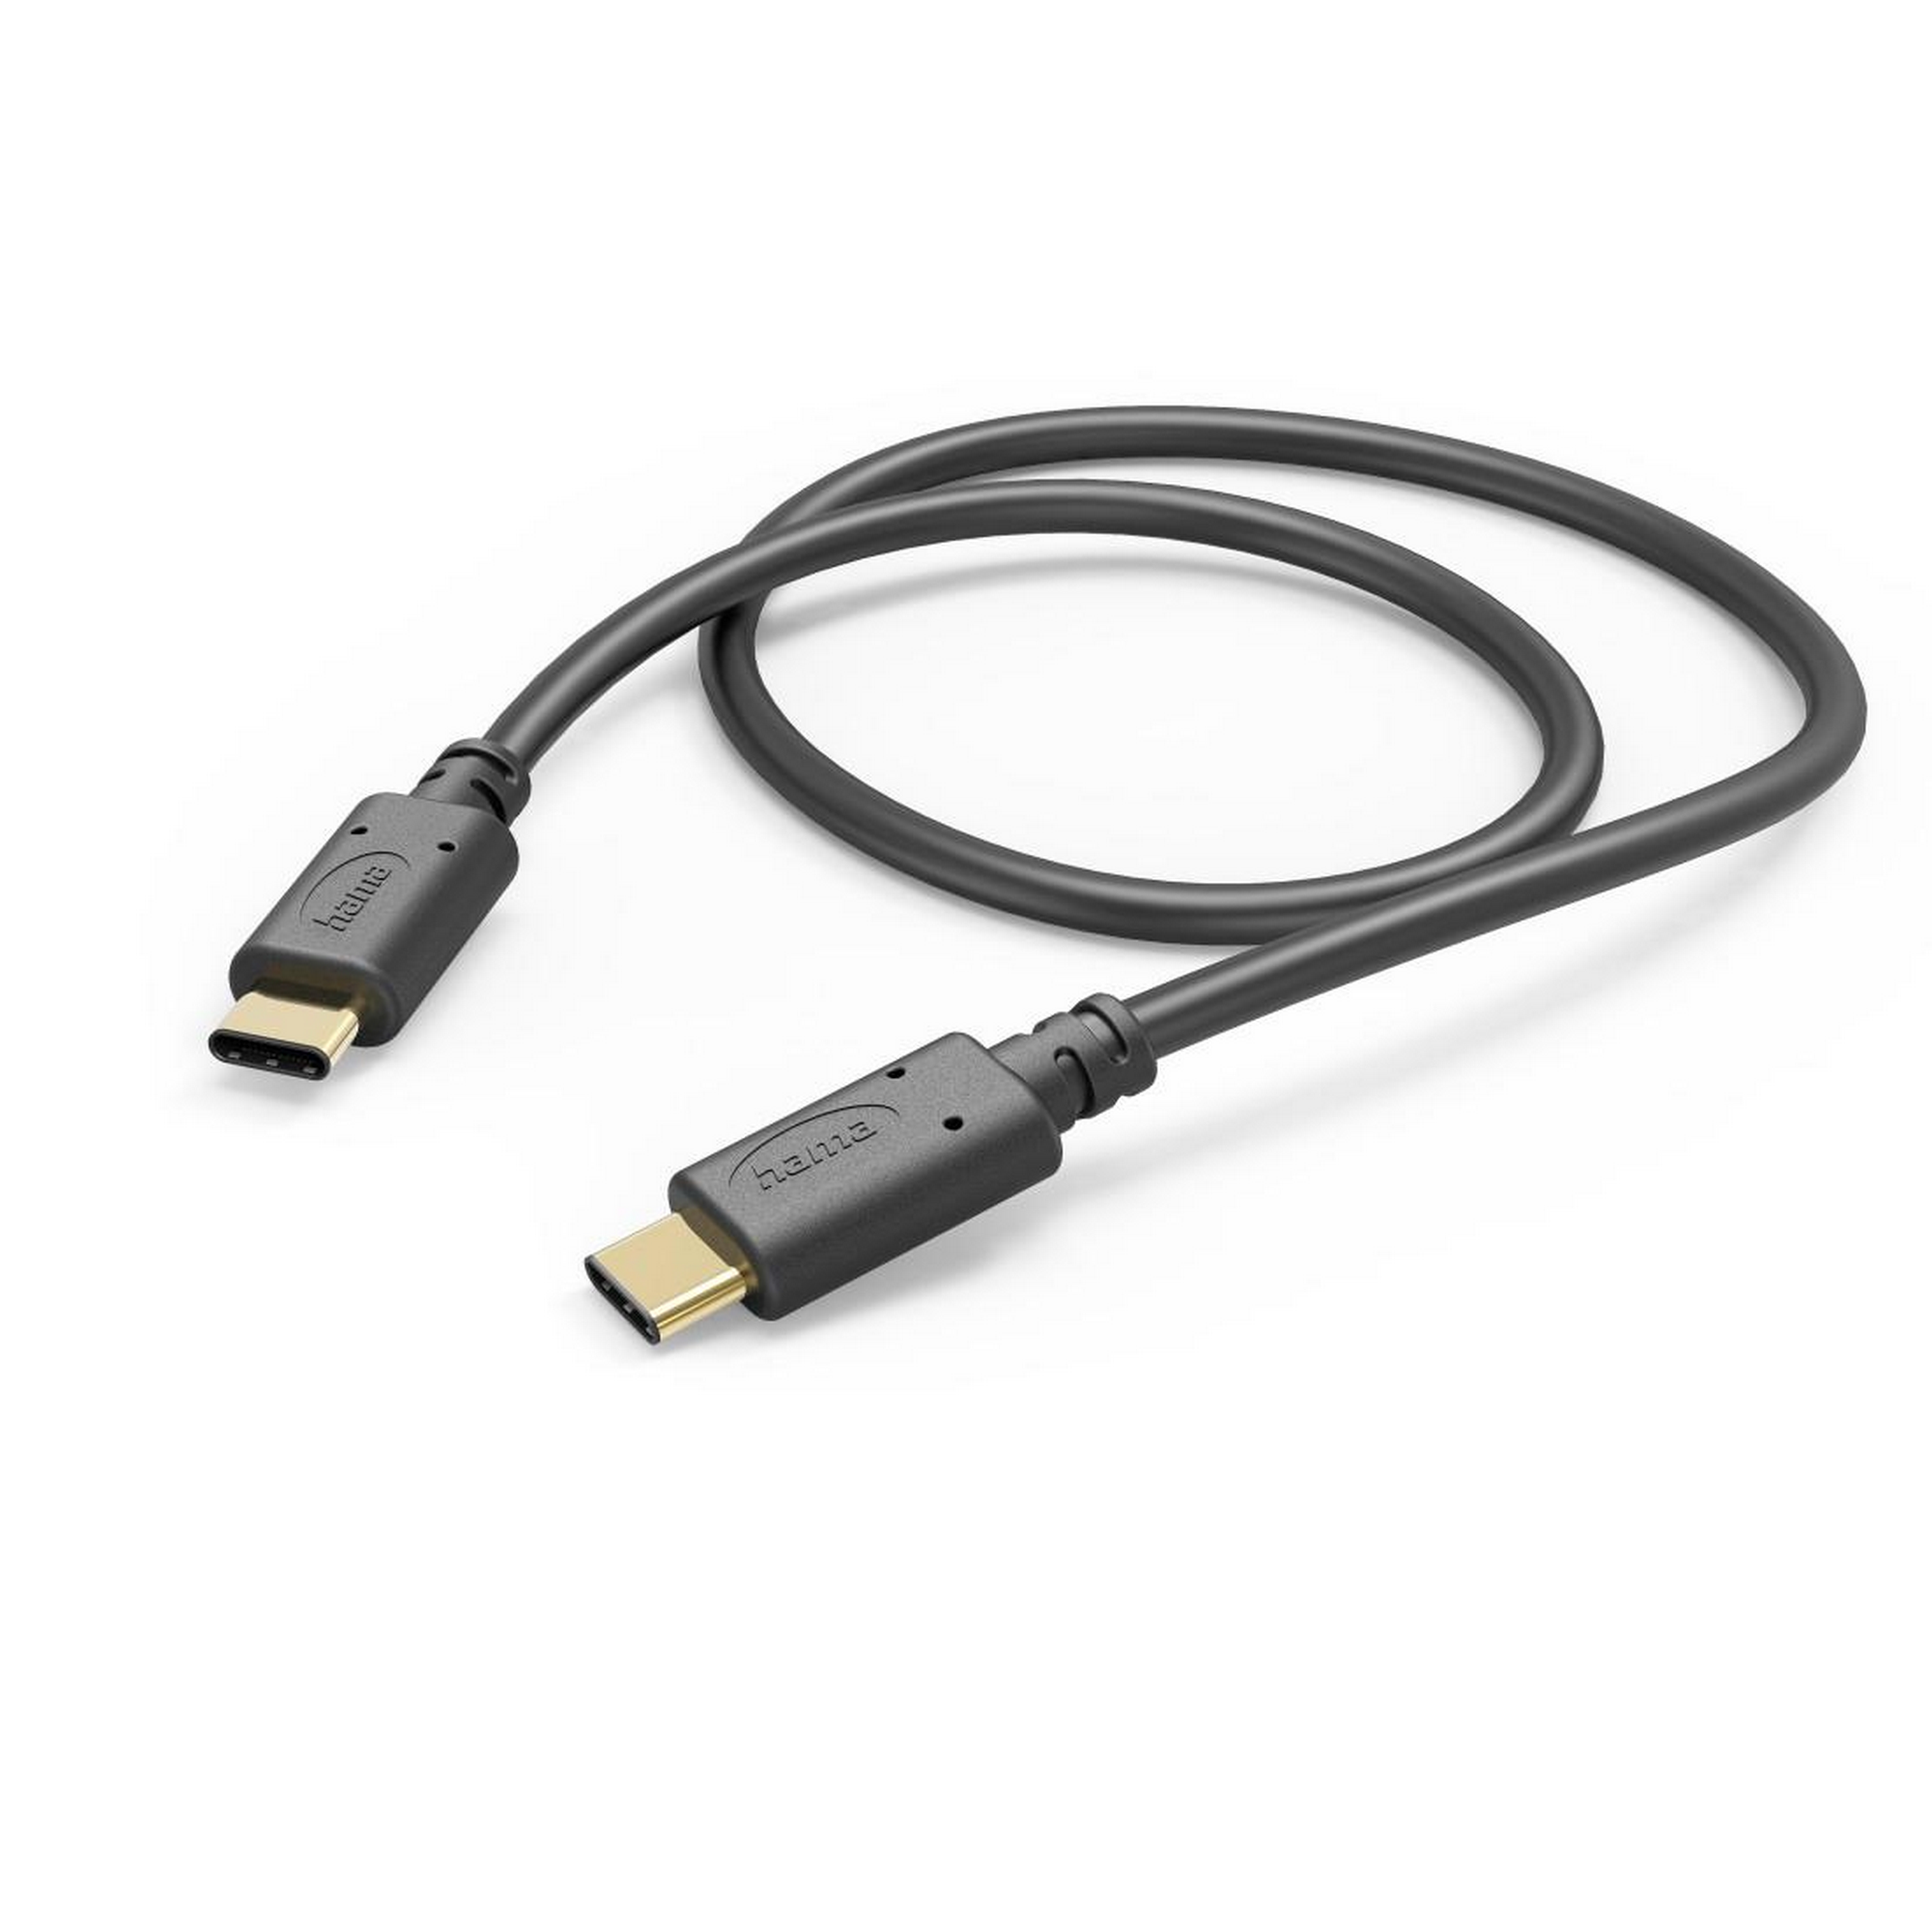 Ladekabel schwarz USB-C mit USB-C 1,5 m + product picture